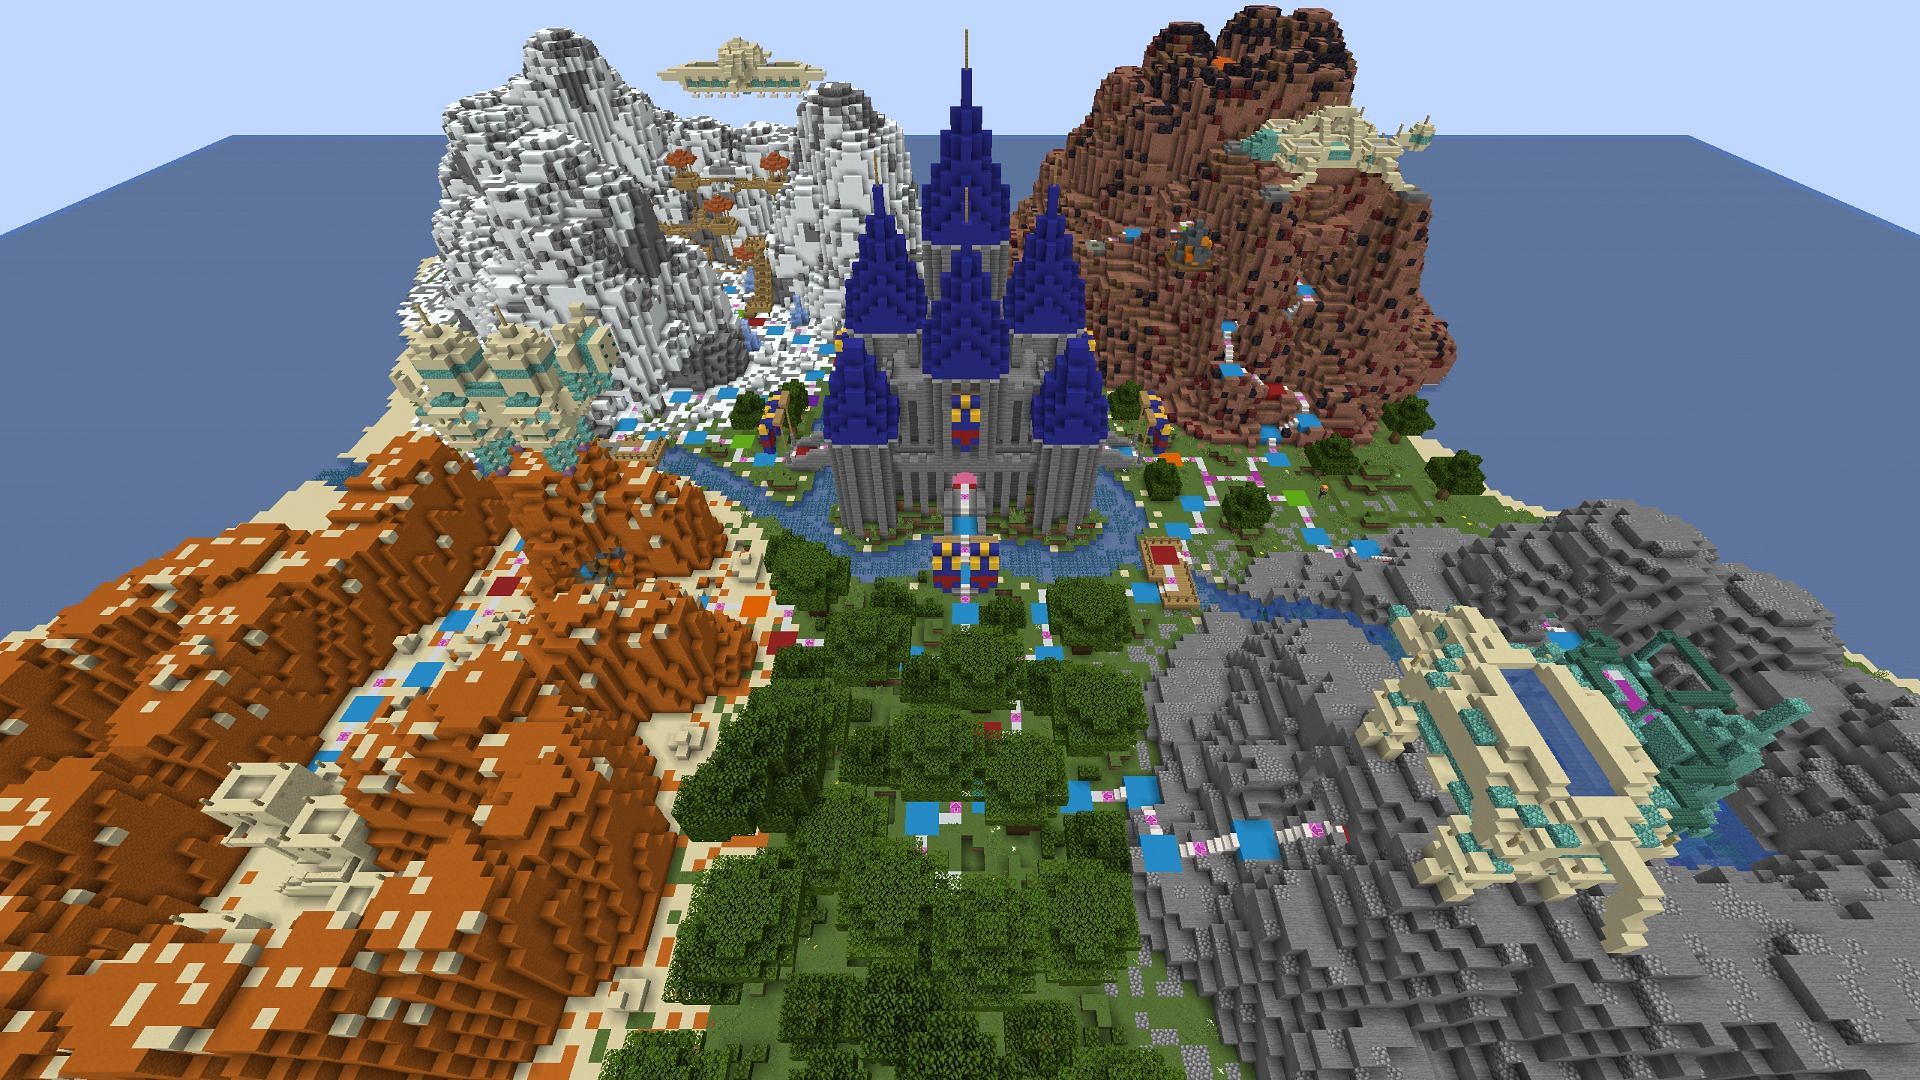 Minecraft Minigames Map pack - Minecraft Worlds - CurseForge